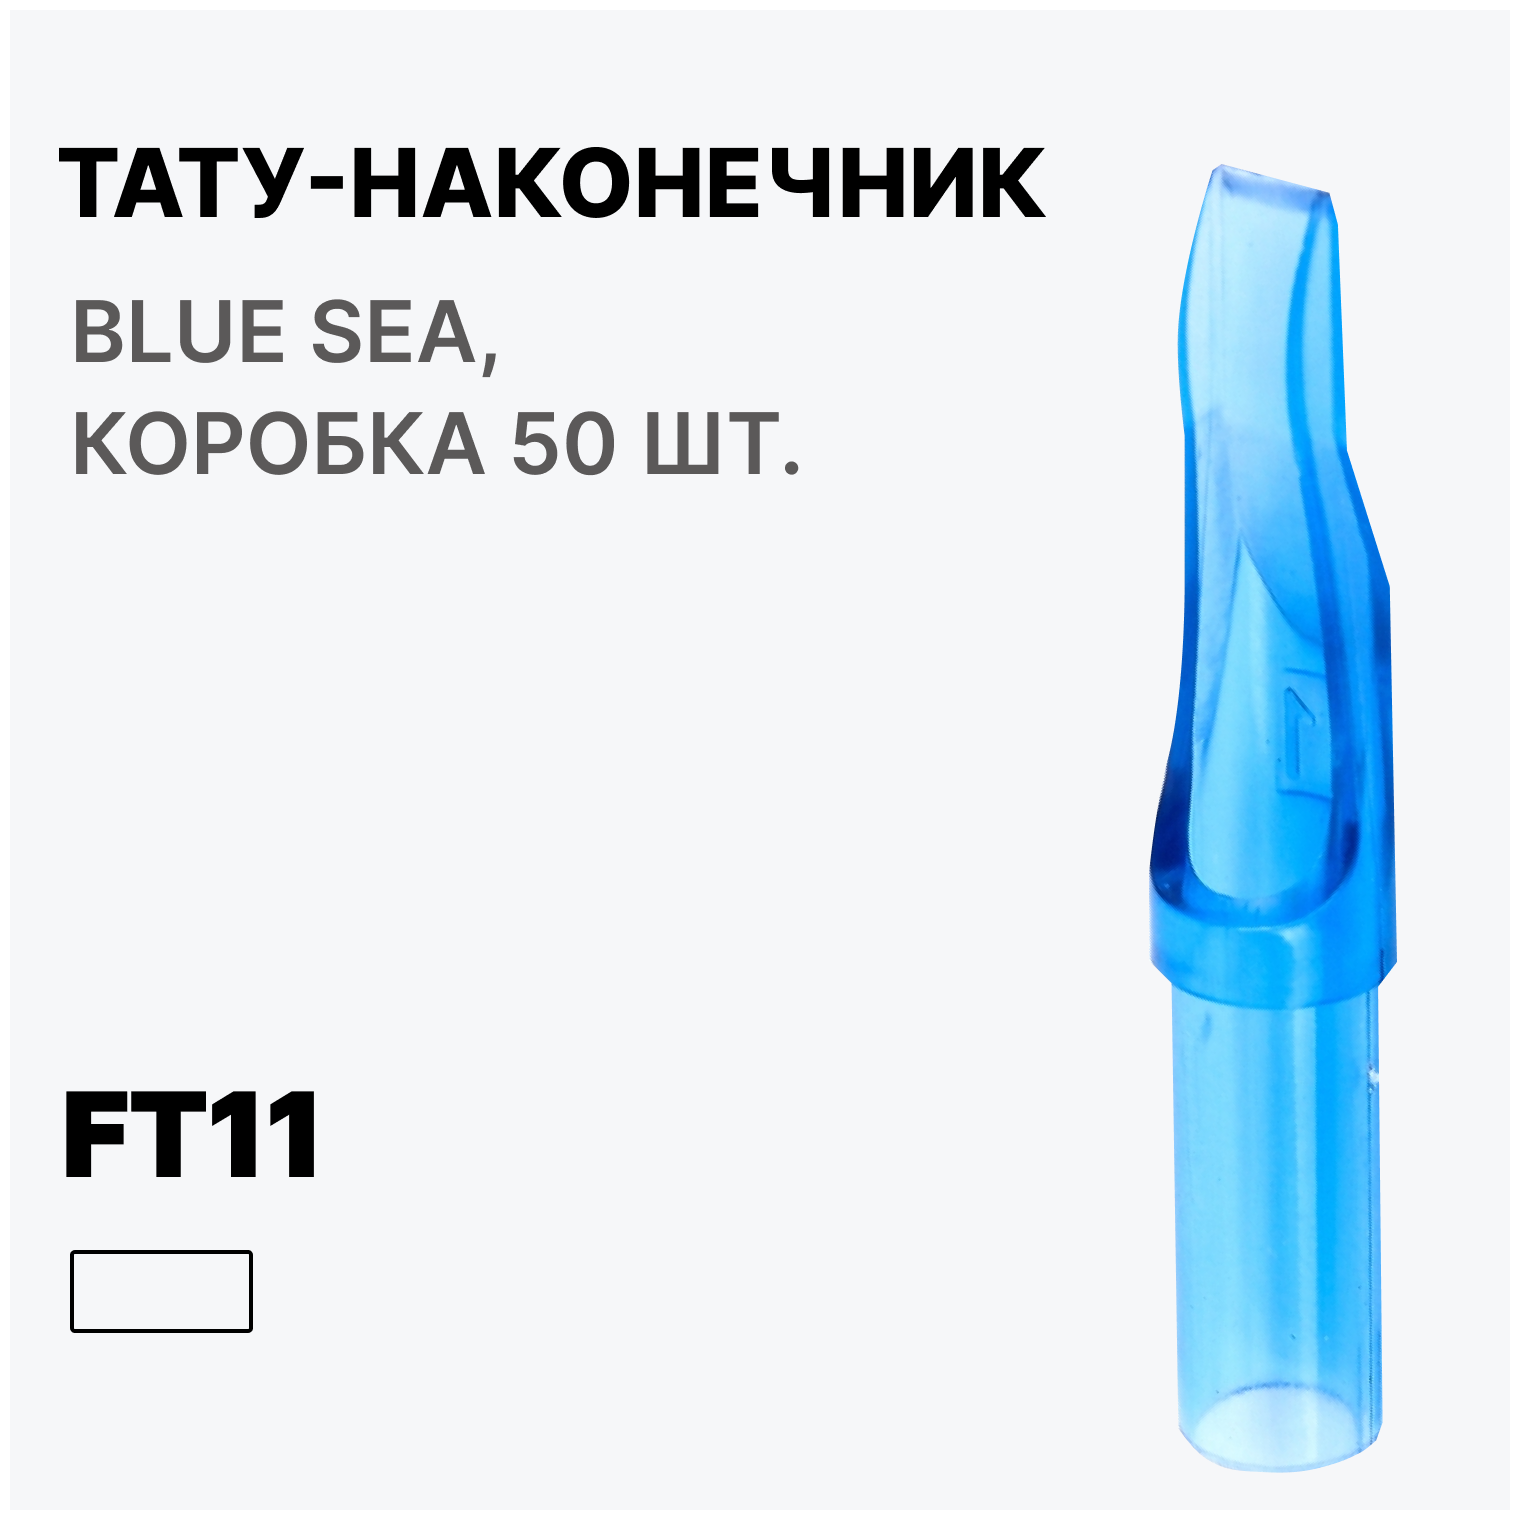 Тату-наконечник FT11, Типсы для тату Flat Professional 11, Носики для тату игл FT11 Blue sea (голубые), 50 шт.